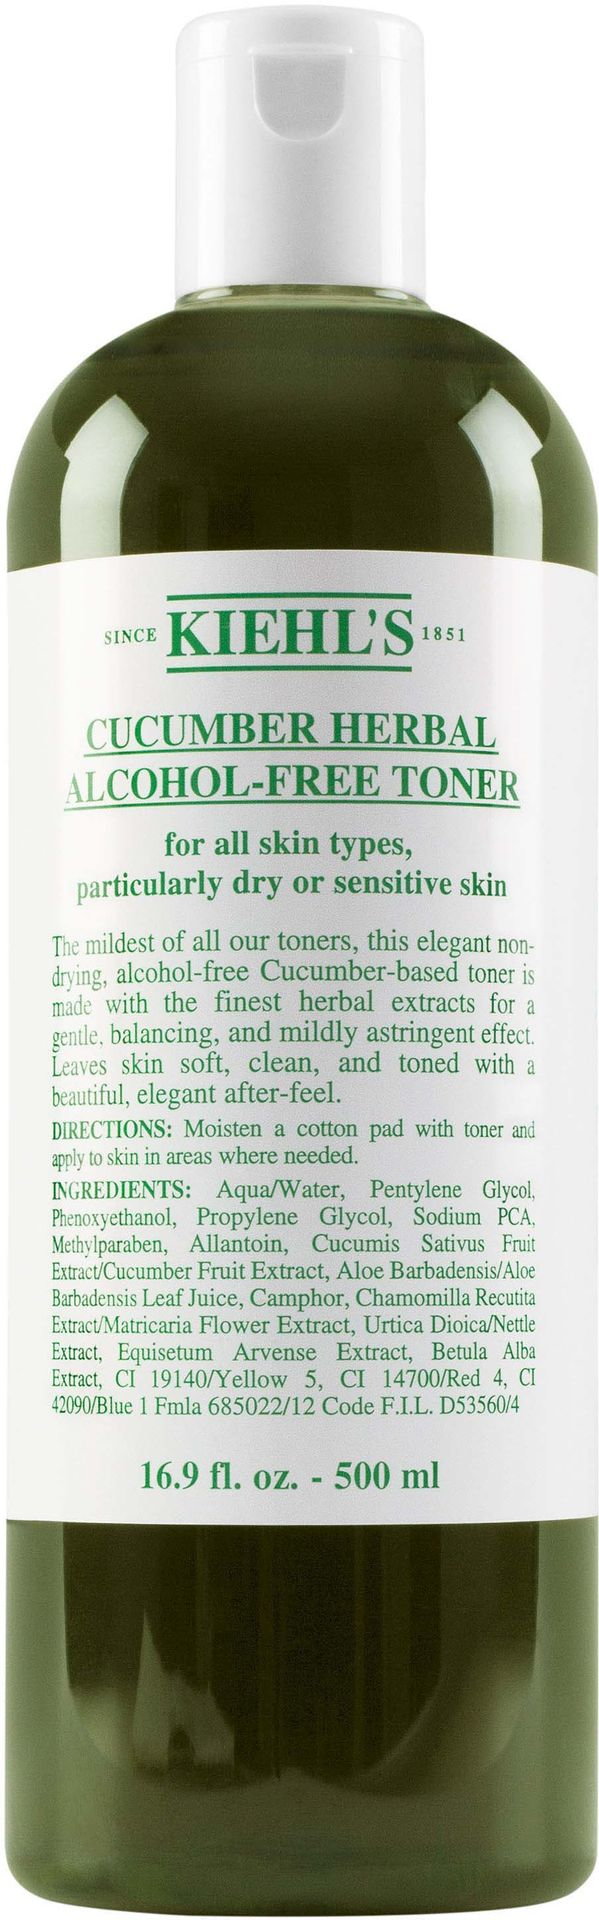 Cucumber Herbal Alcohol-Free Toner - Bezalkoholowy tonik do cery suchej i wrażliwej